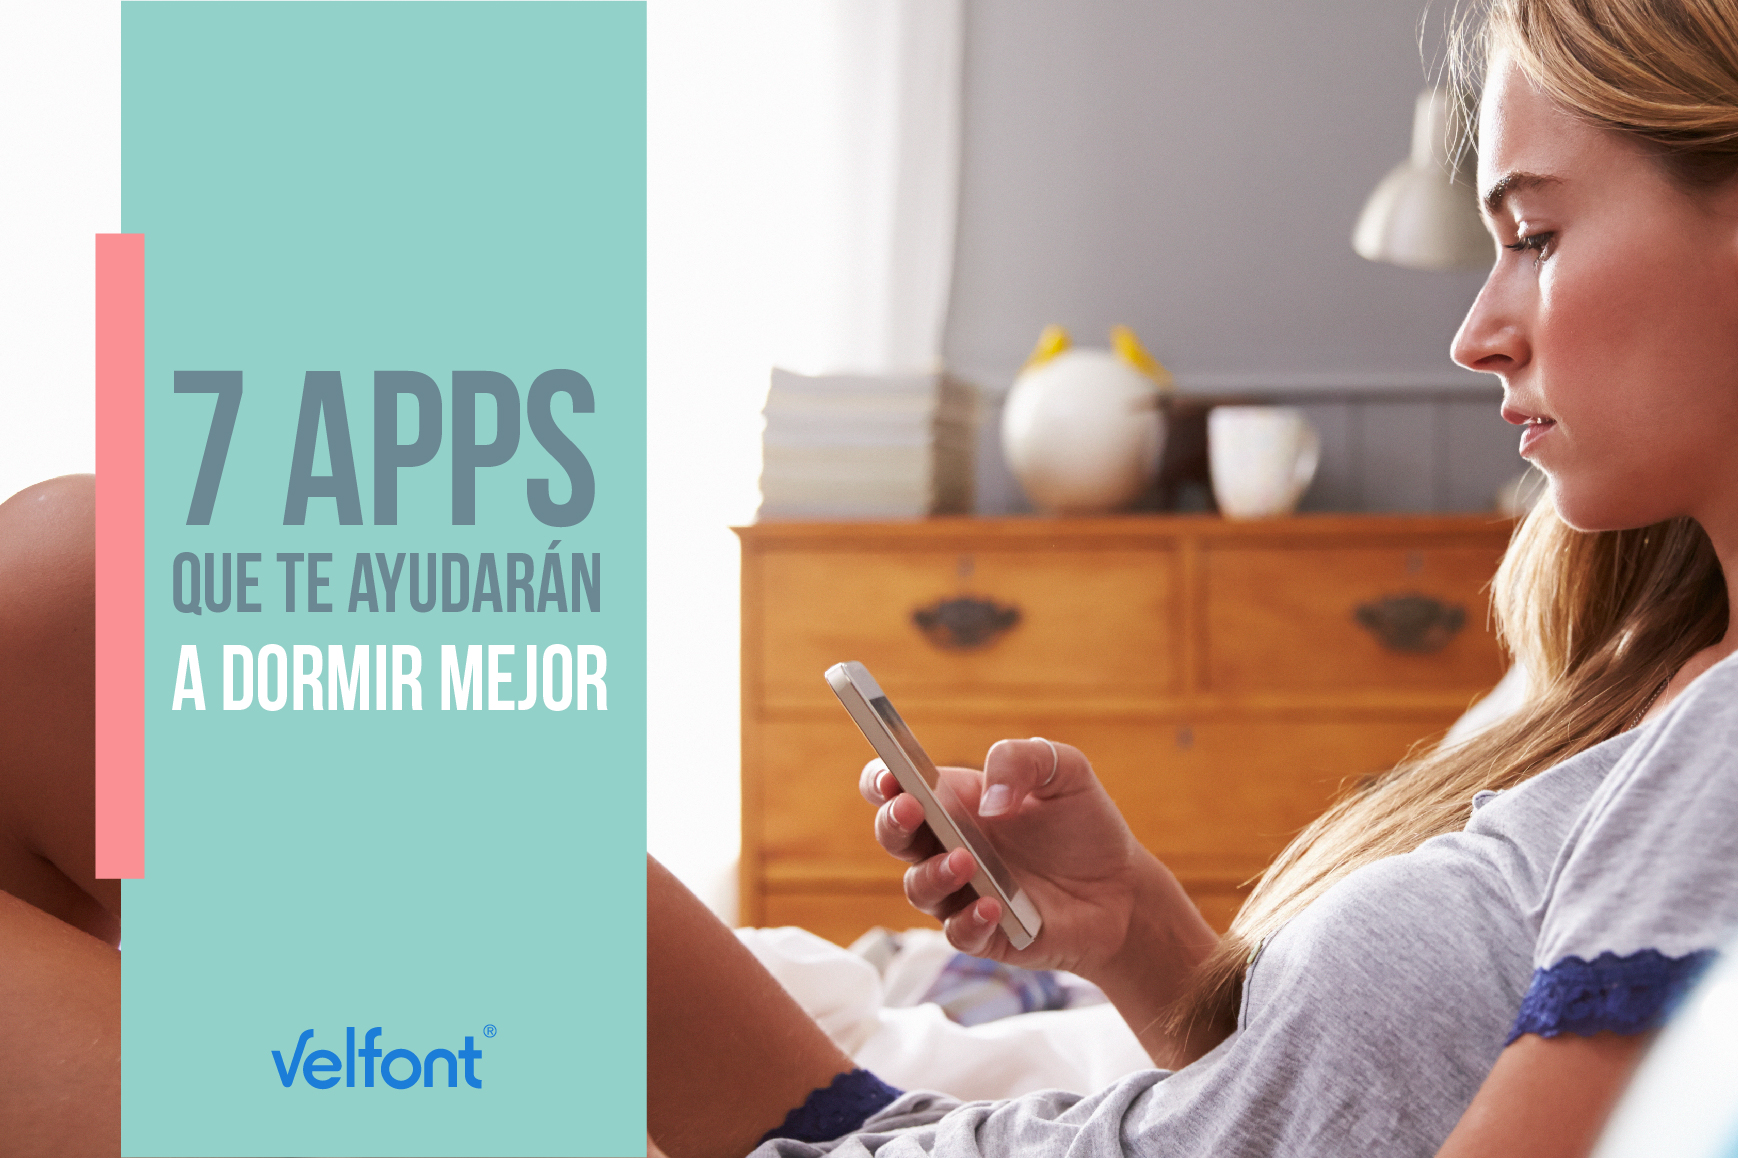 7 apps que te ayudarán a dormir mejor